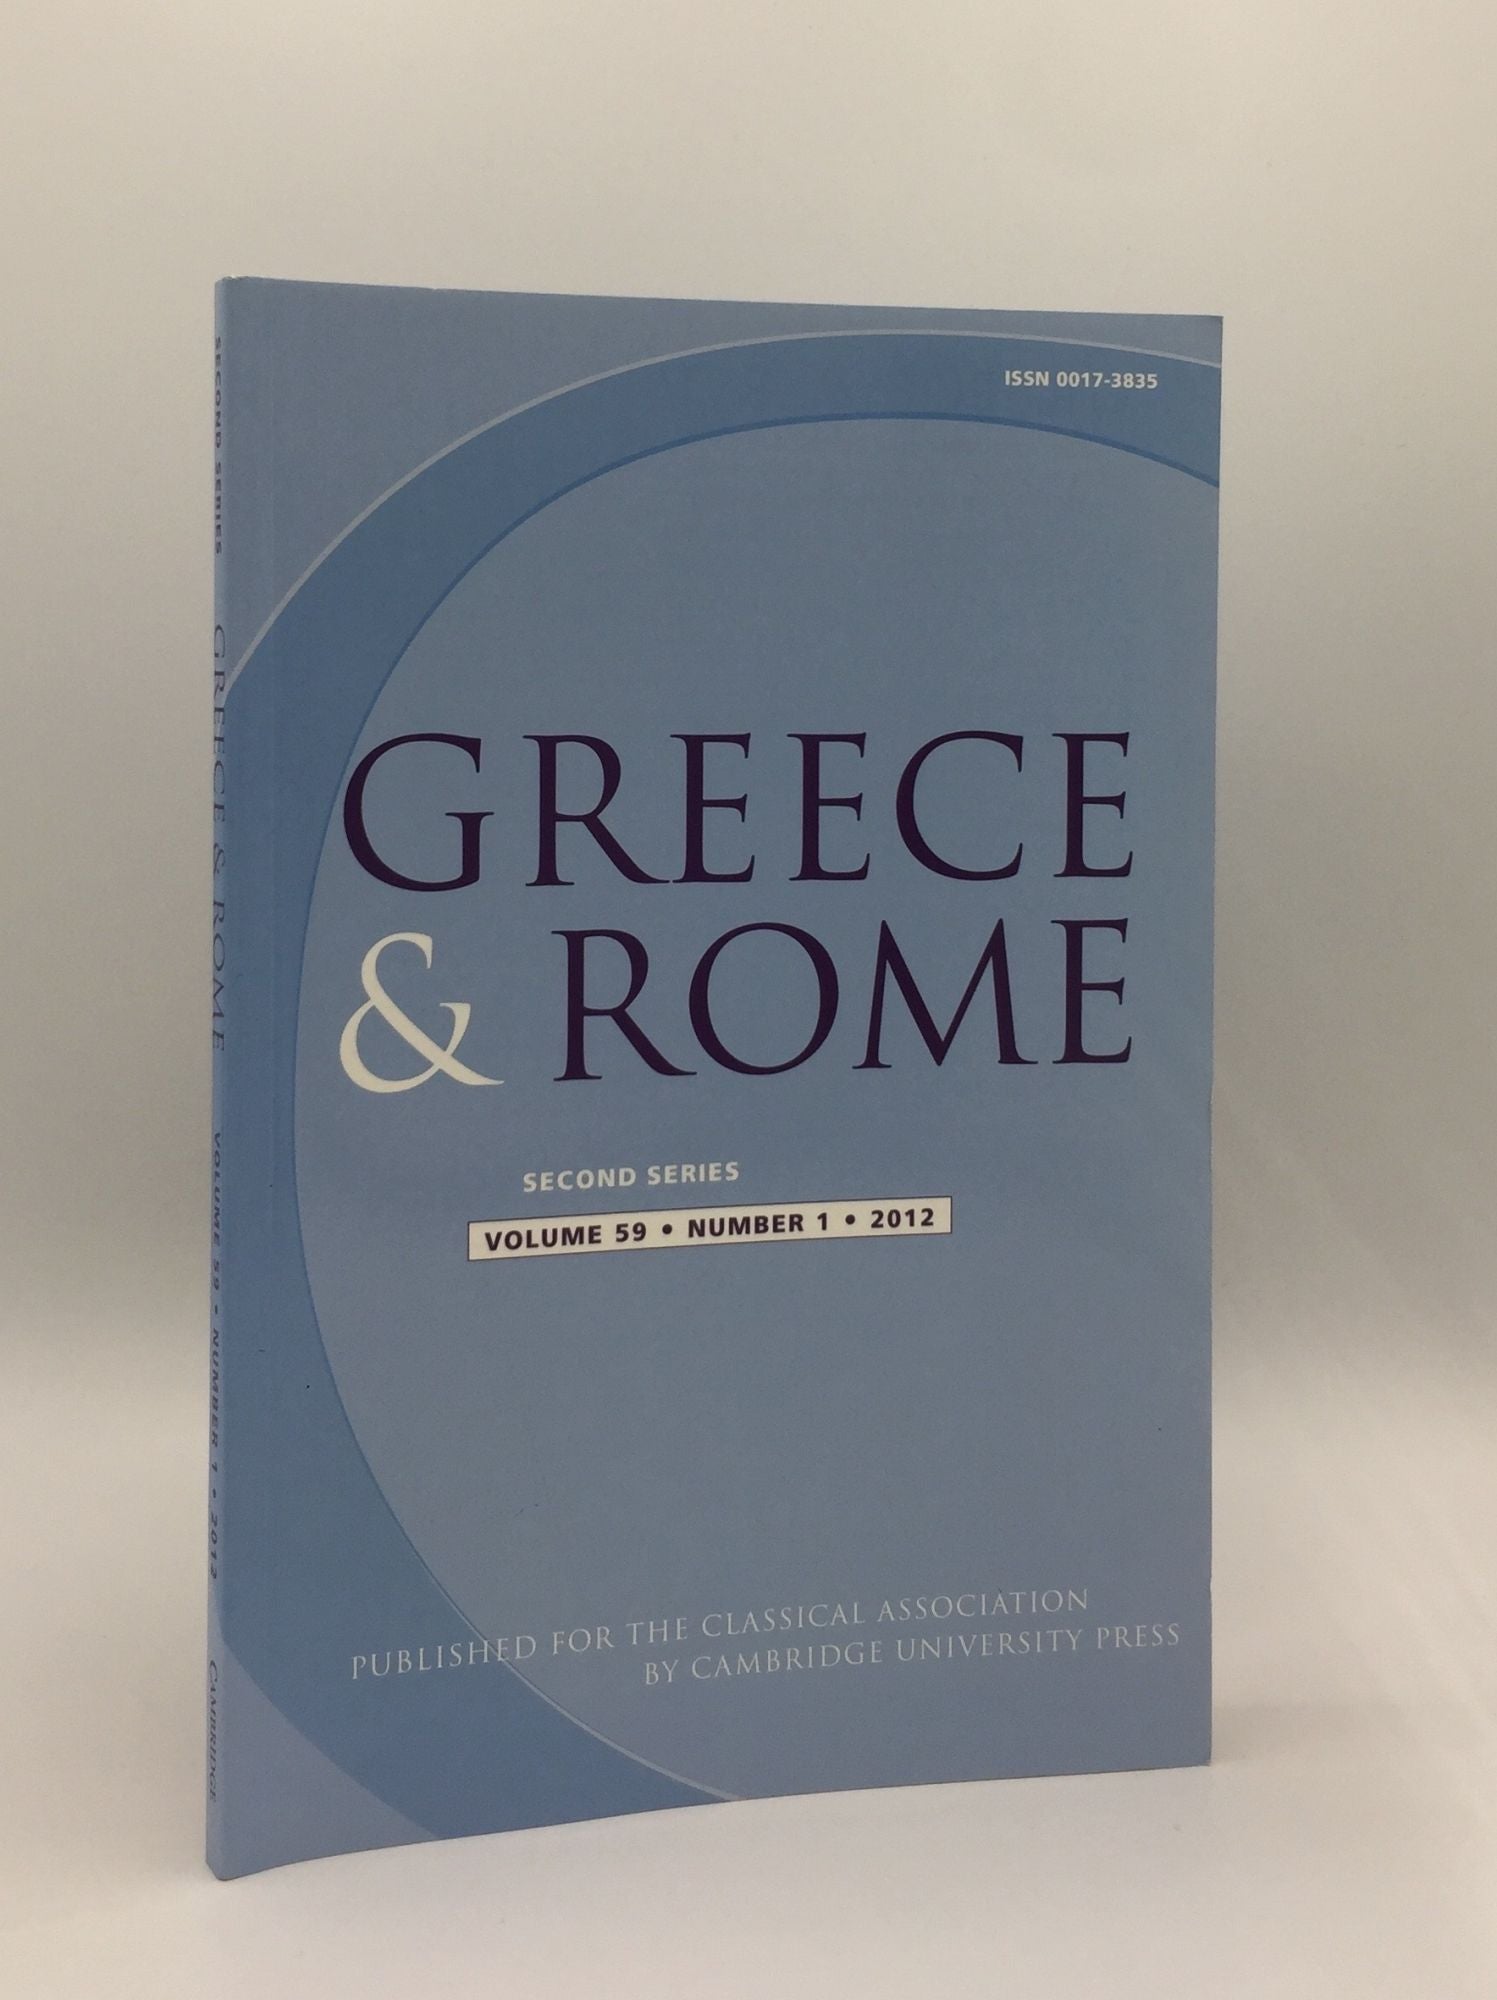 TAYLOR J., IZZET V., SHORROCK R. - Greece & Rome Second Series April 2012 Vol. 59 No. 1